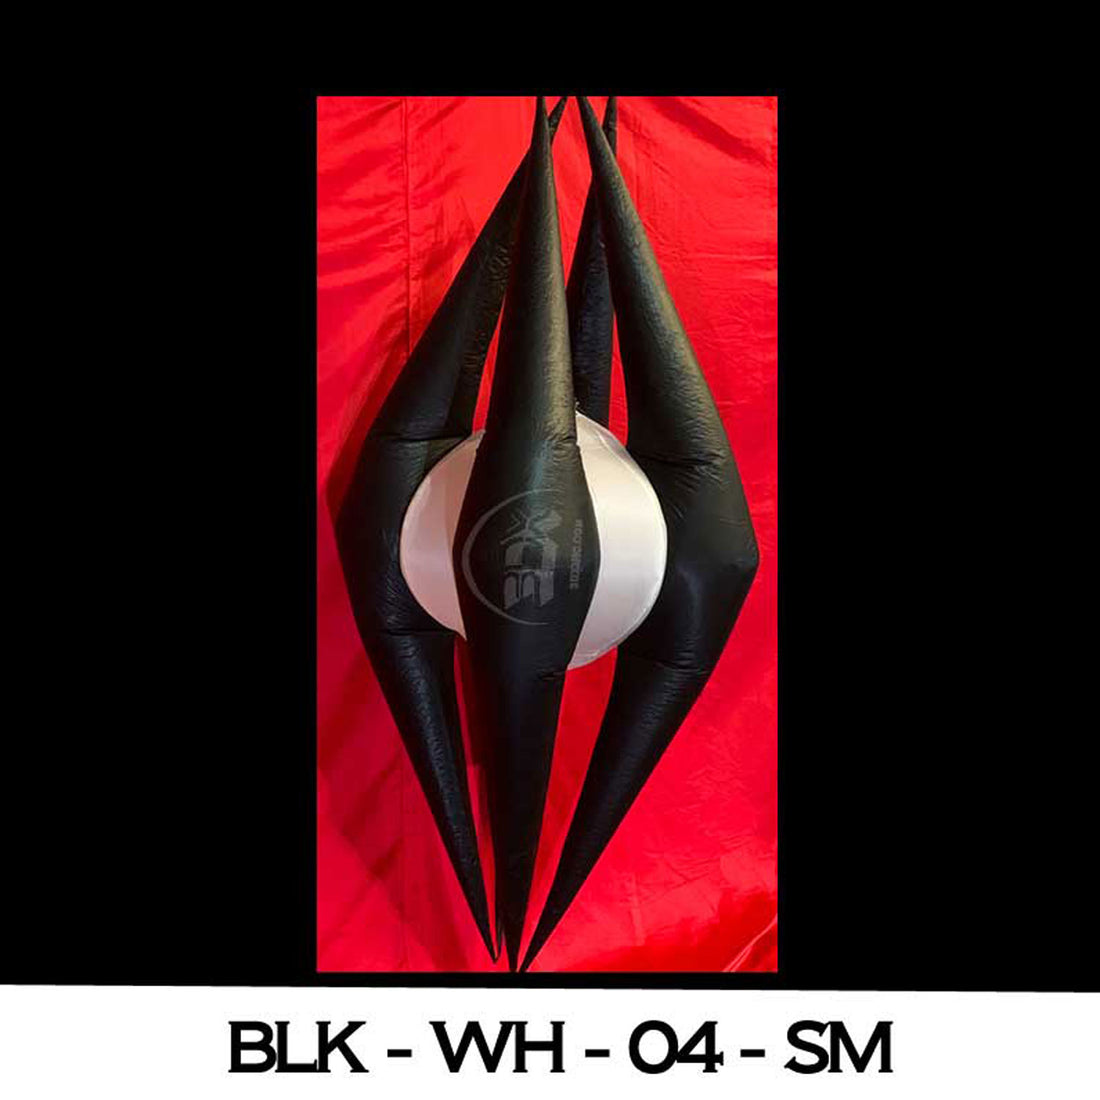 BLK - WH - 04 - SM